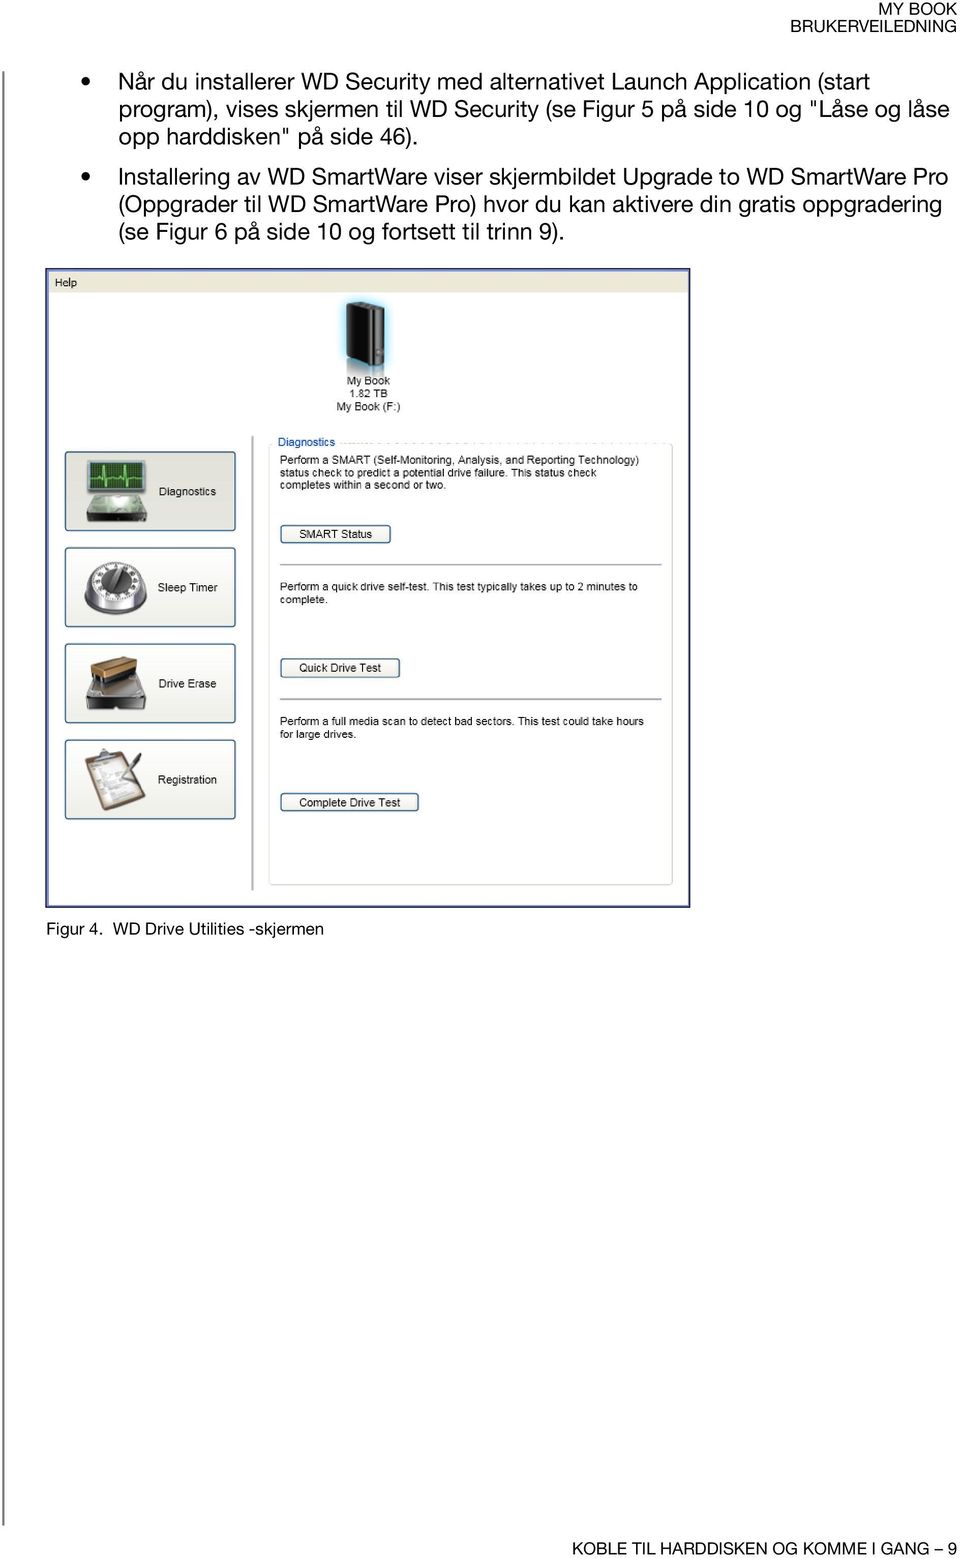 Installering av WD SmartWare viser skjermbildet Upgrade to WD SmartWare Pro (Oppgrader til WD SmartWare Pro) hvor